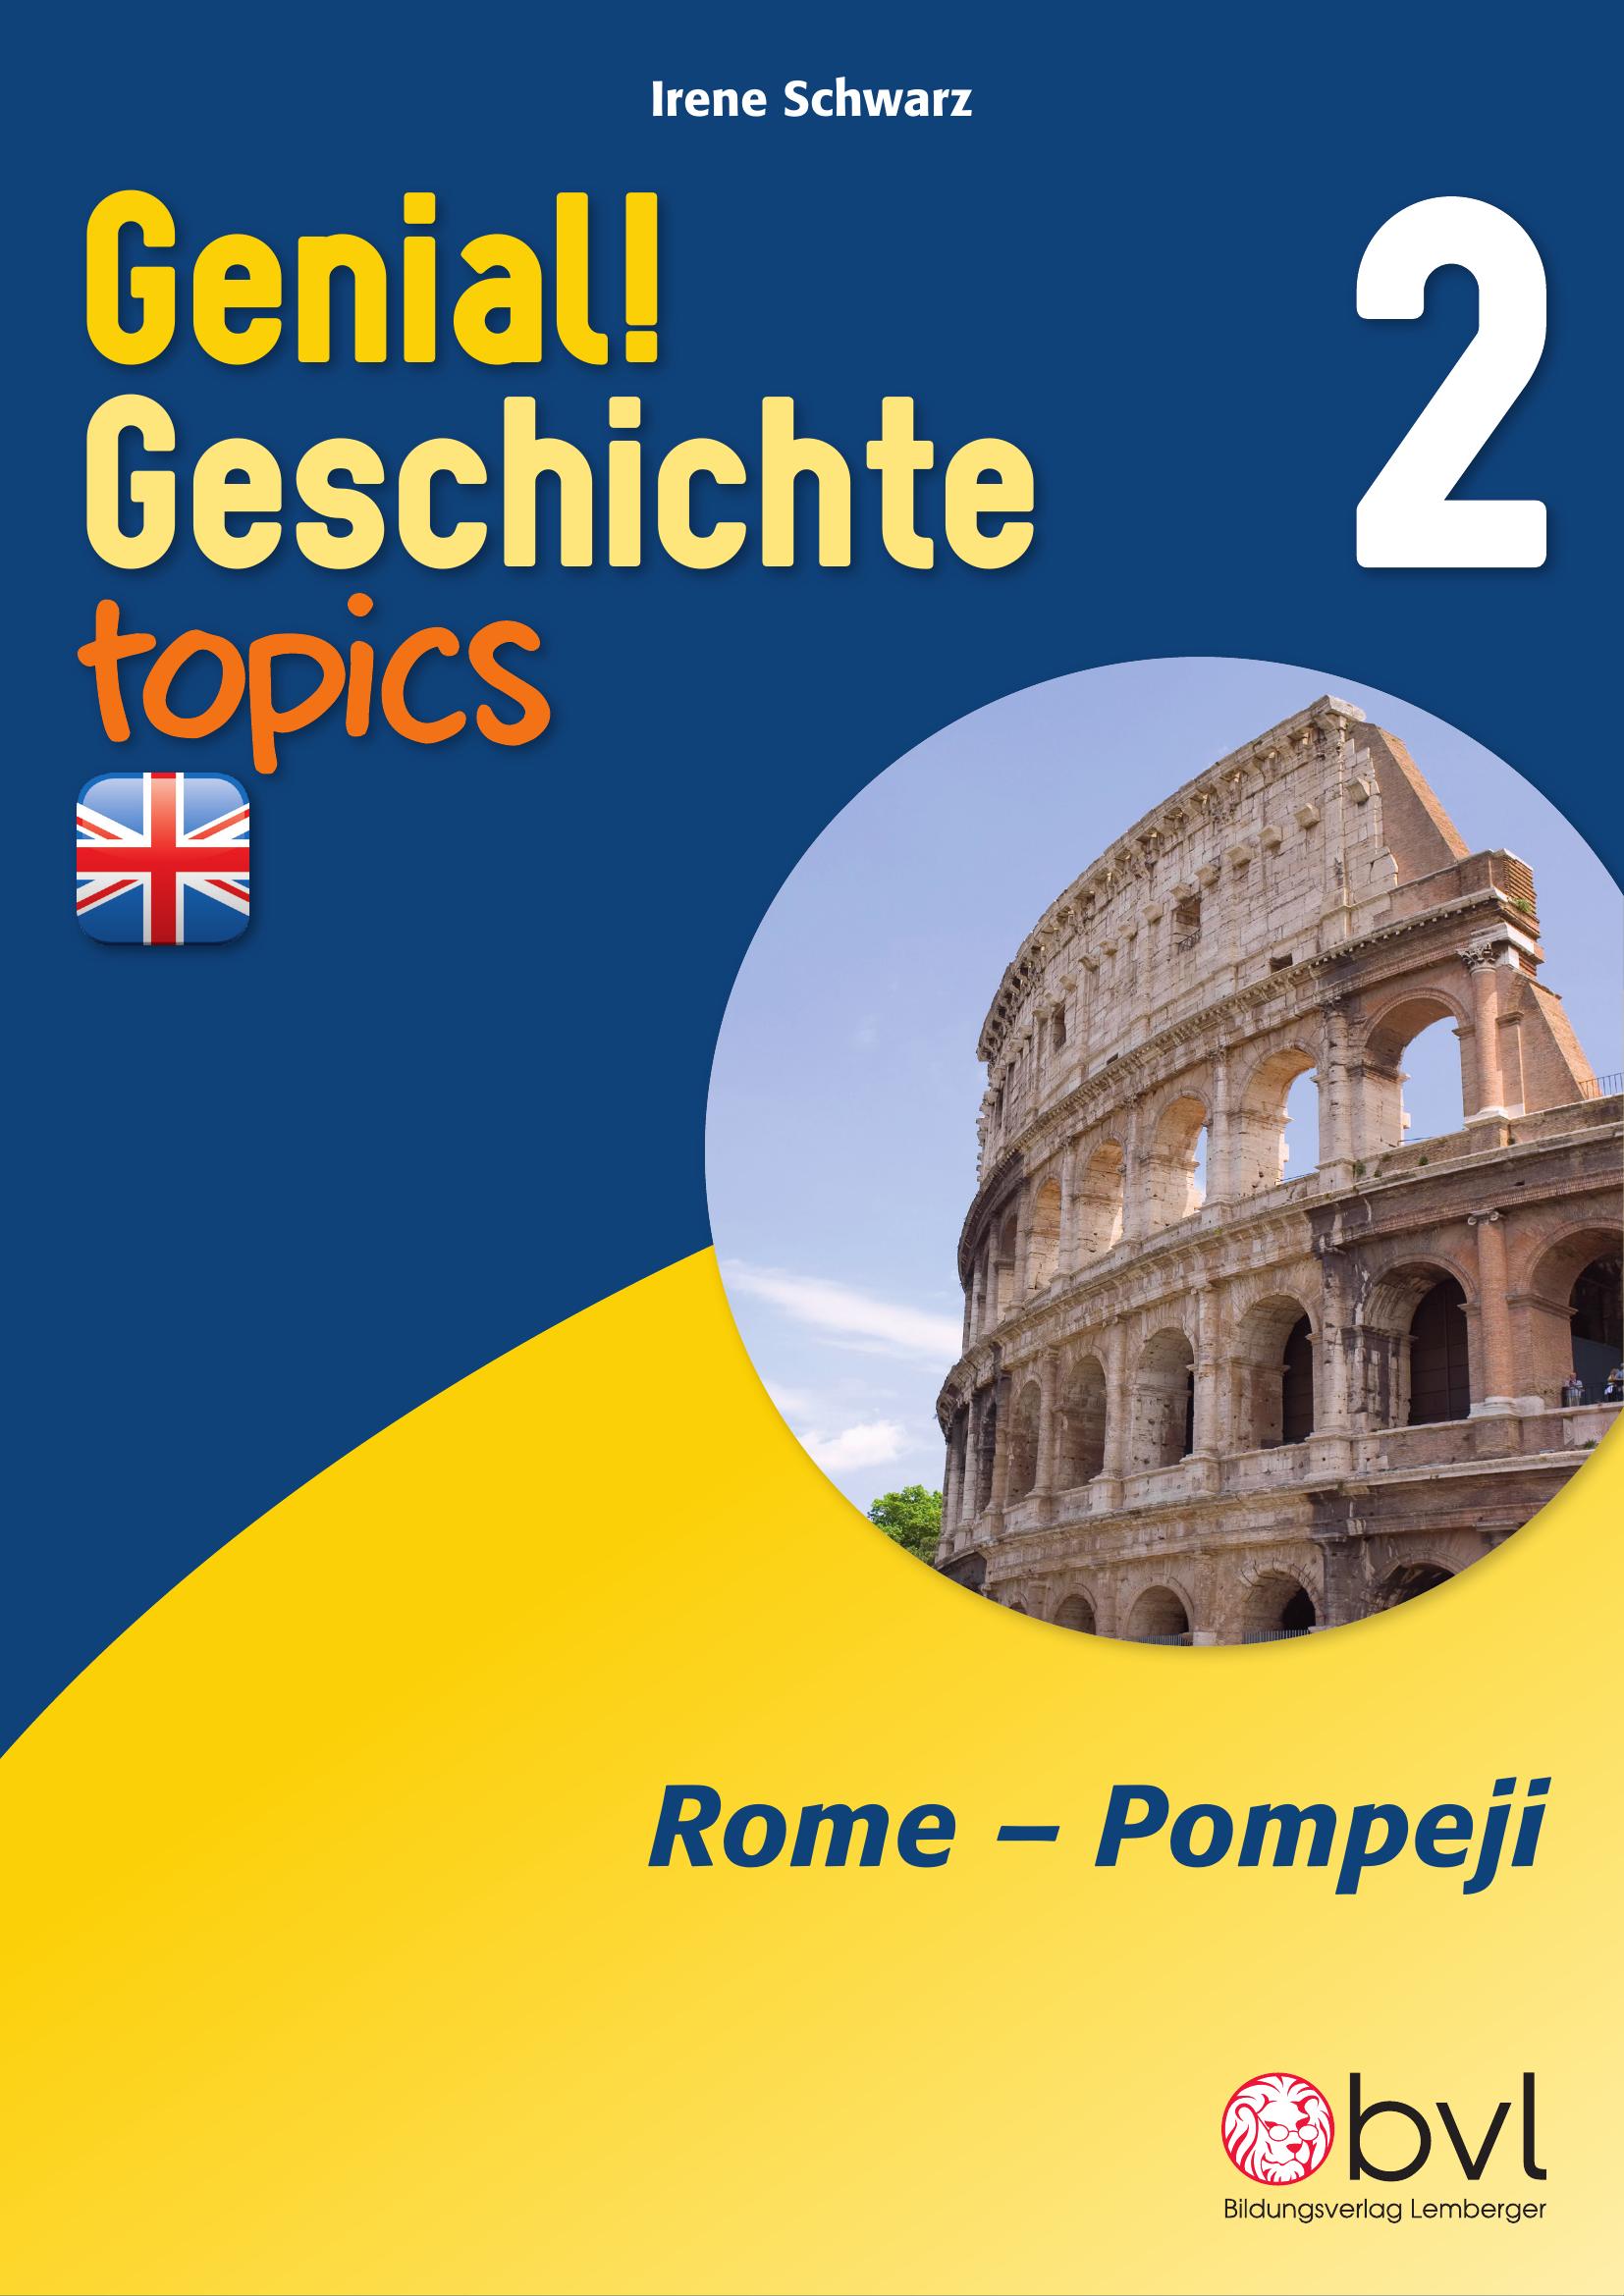 Genial! Geschichte 2 – topics 4: Rome – Pompeji